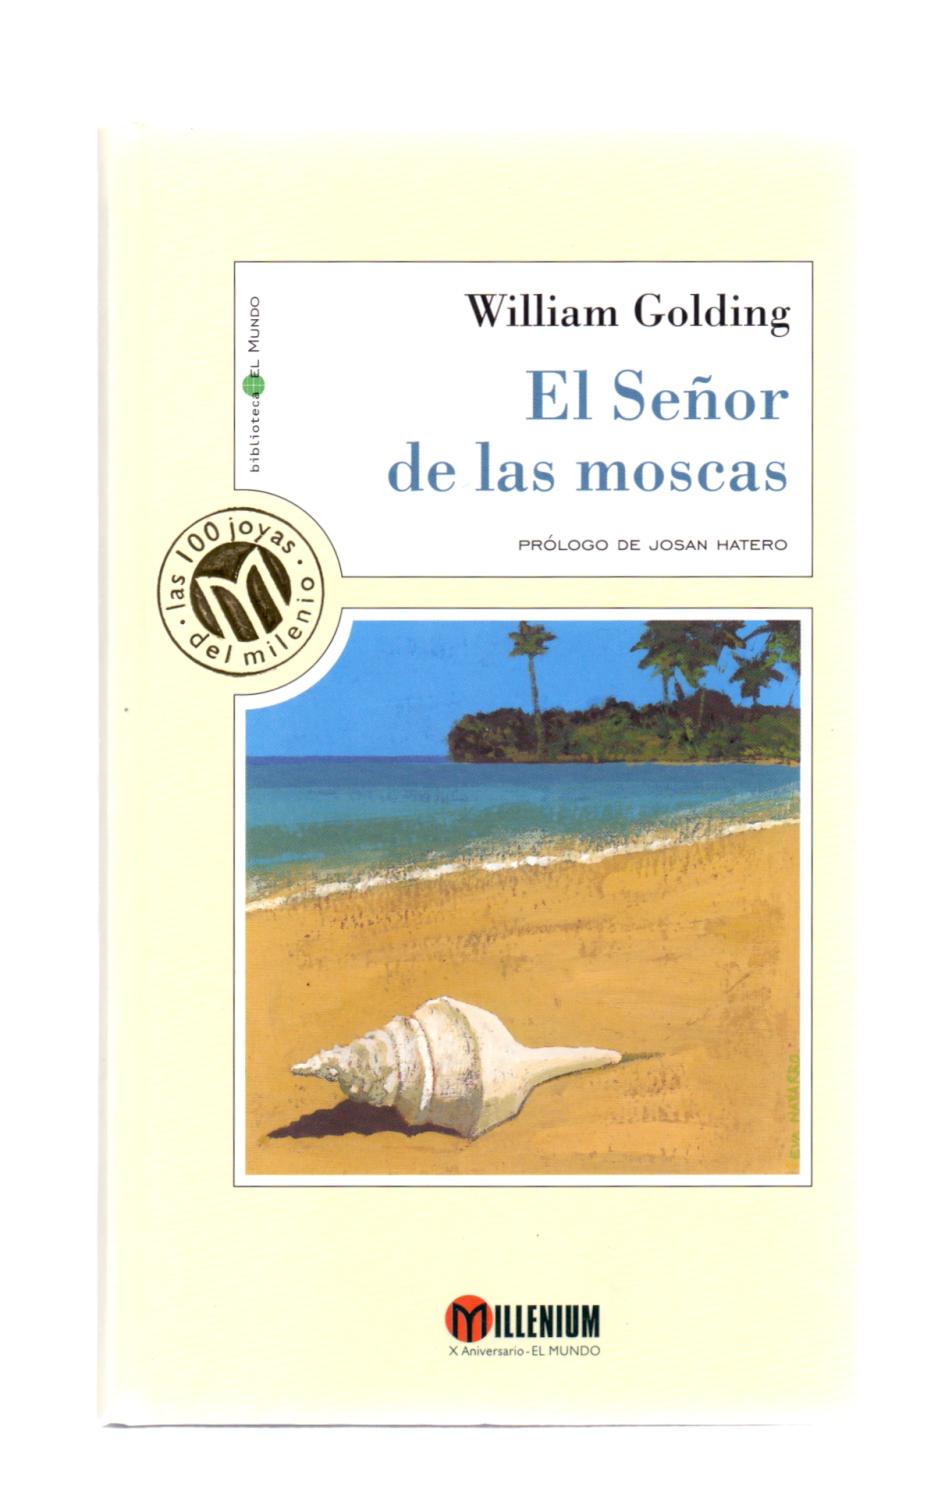 EL SEÑOR DE LAS MOSCAS by William Golding / Prologo de Josan